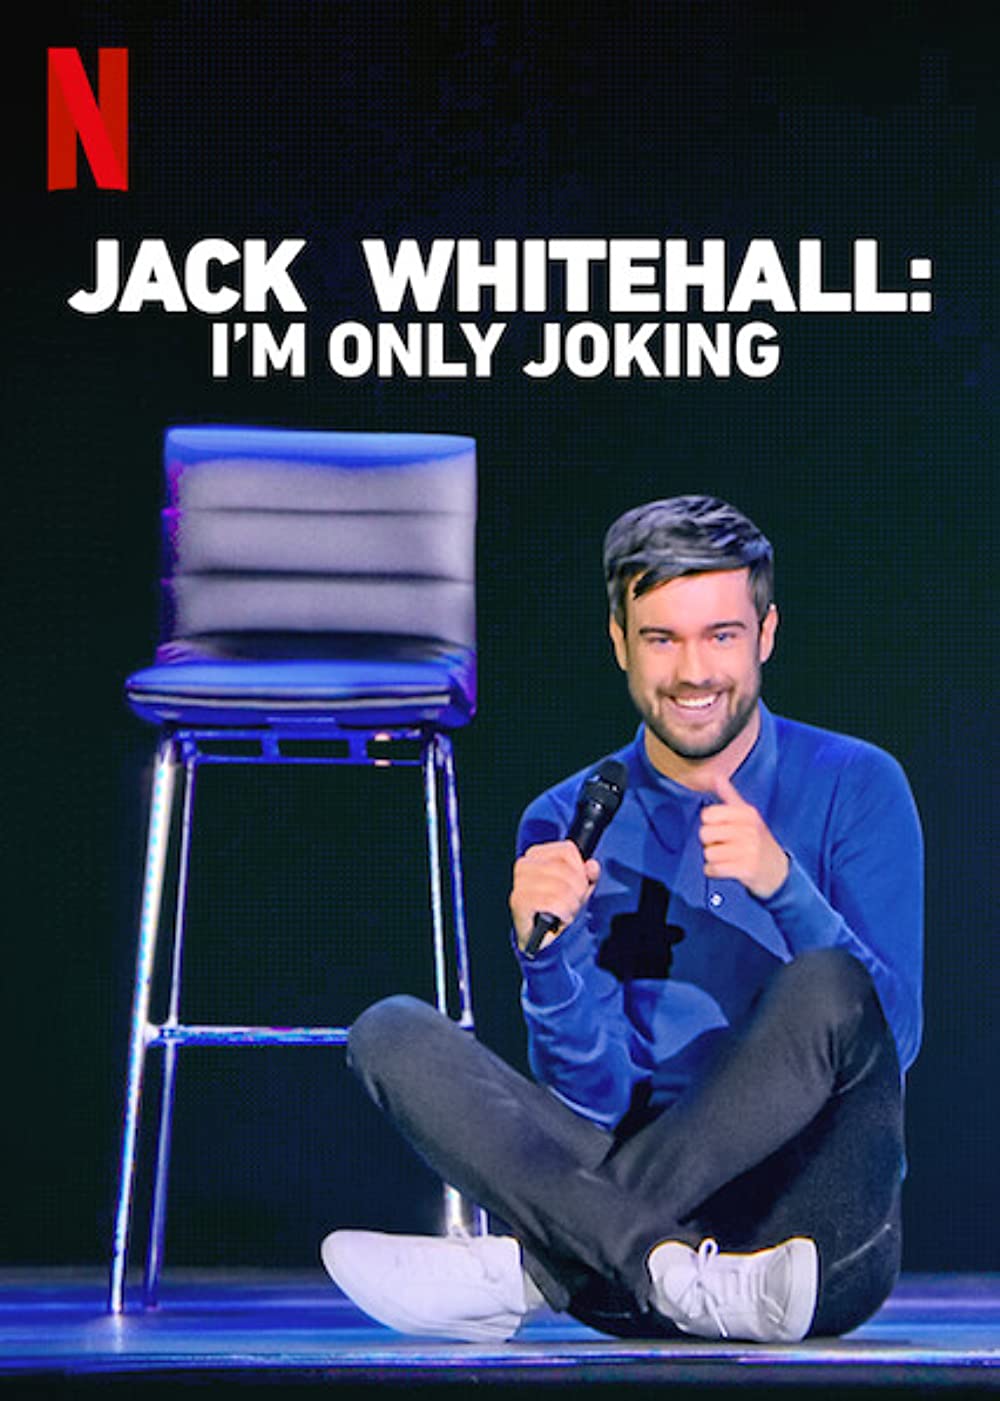 Filmbeschreibung zu Jack Whitehall: I'm Only Joking